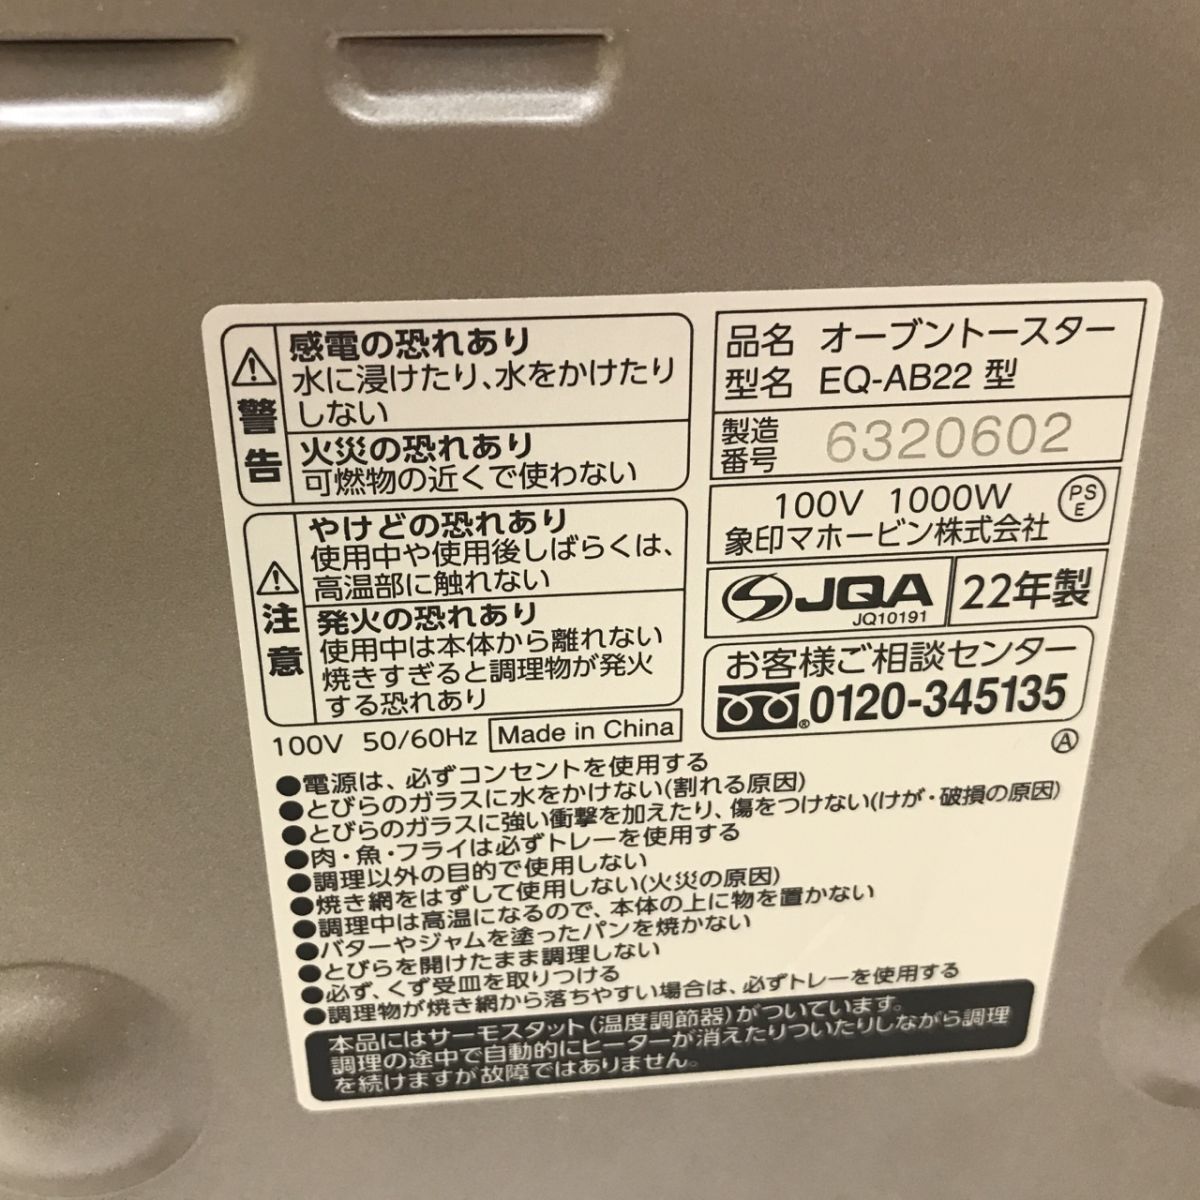  Zojirushi ZOJIRUSHI oven toaster EQ-AB22.... club [C4094]